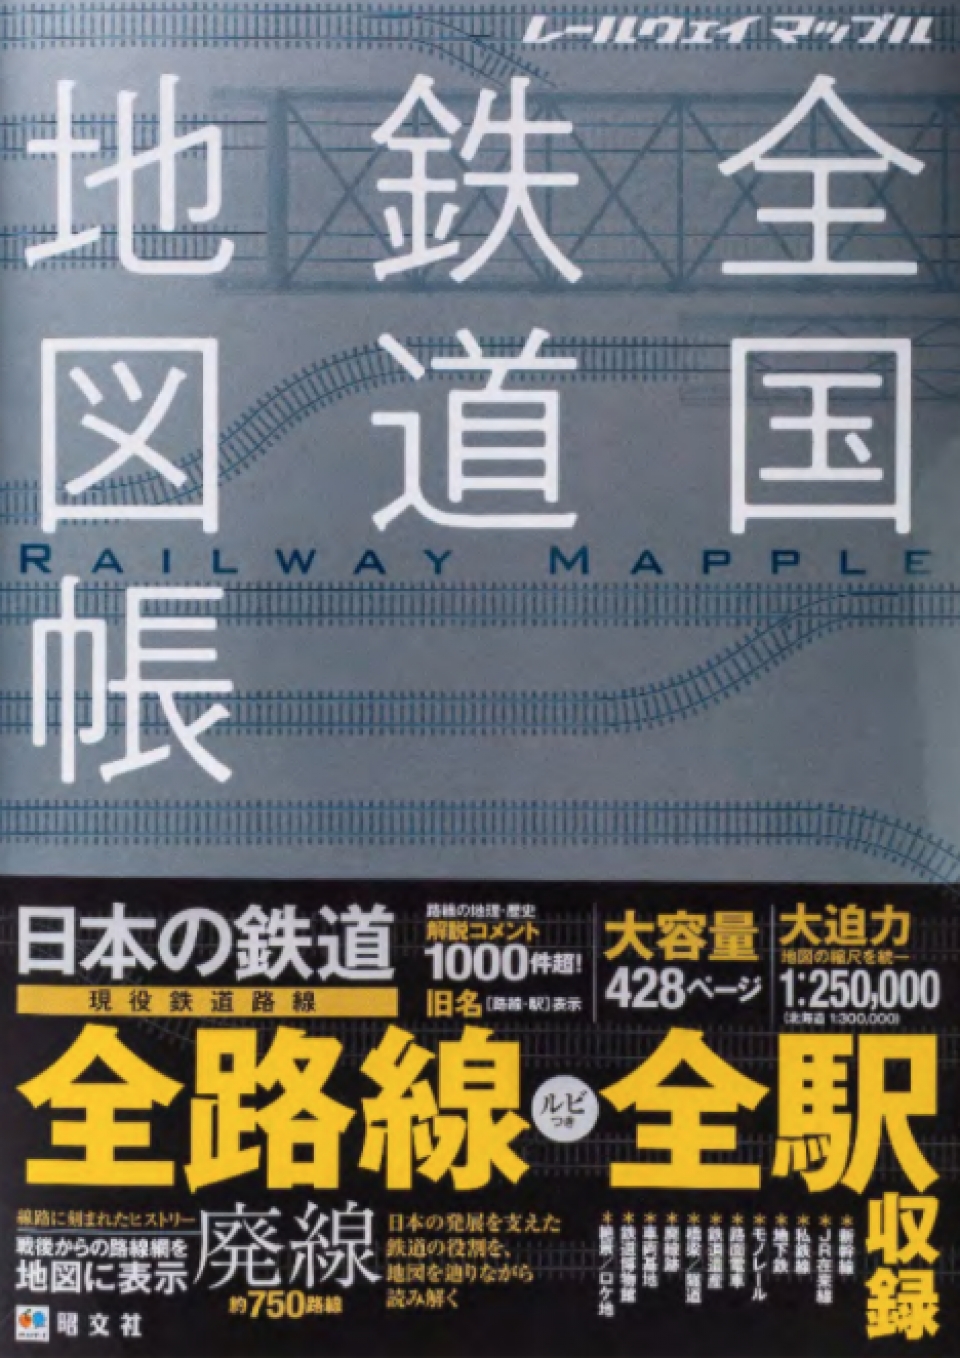 過去と現在を網羅「全国鉄道地図帳」11月27日発売 | レイルラボ ニュース